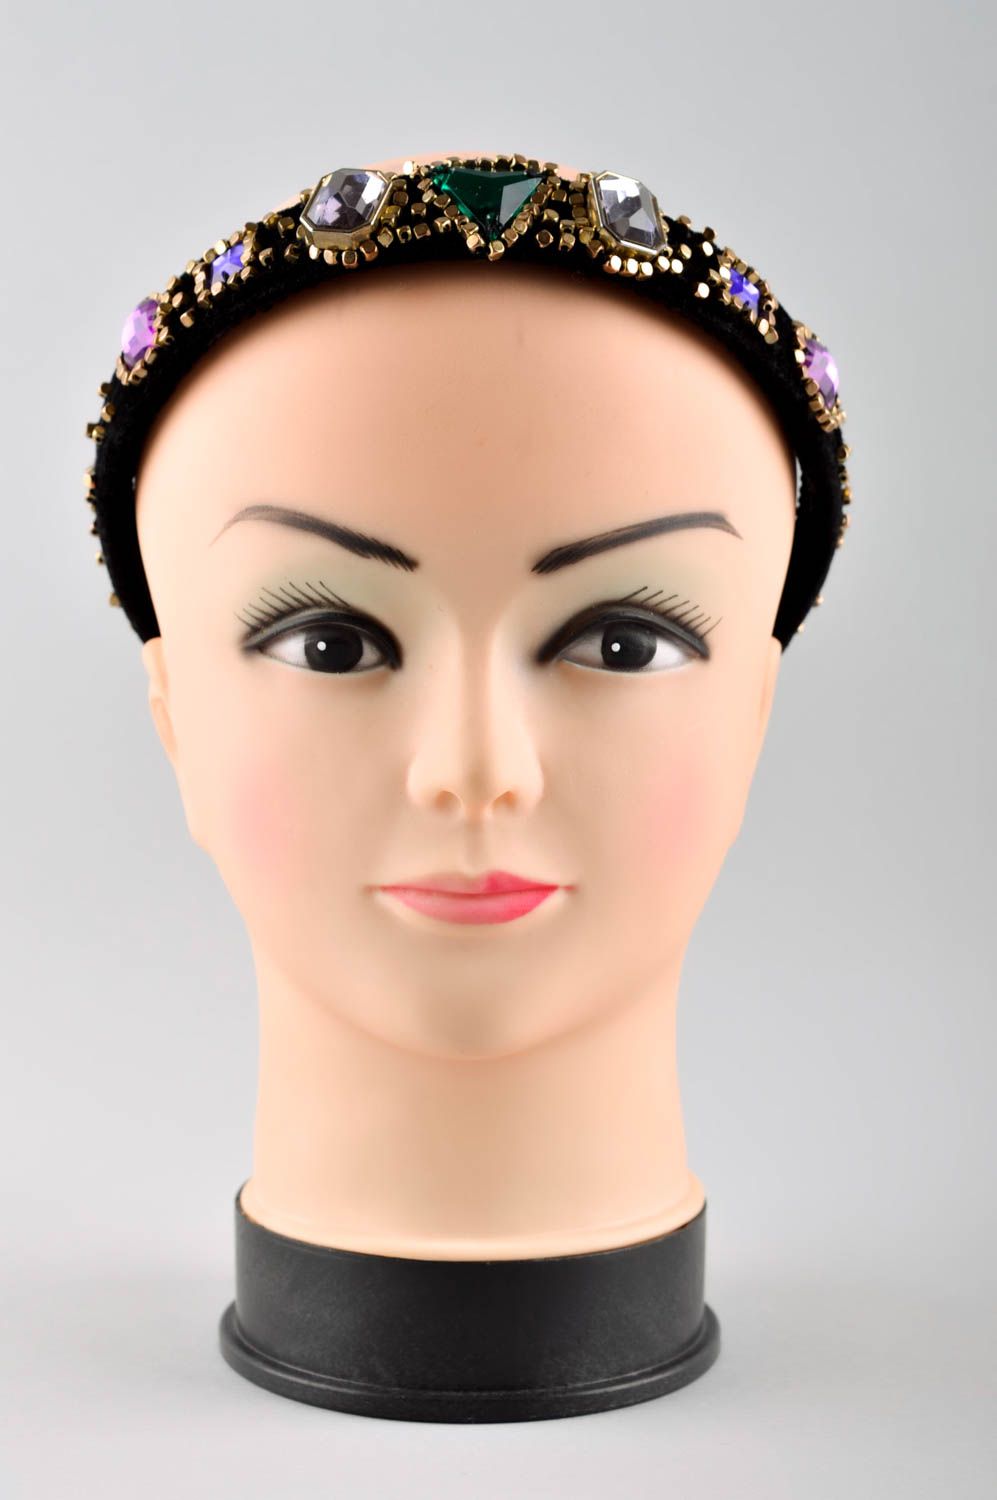 Обруч на голову ручной работы аксессуар для волос женский аксессуар с бисером фото 2